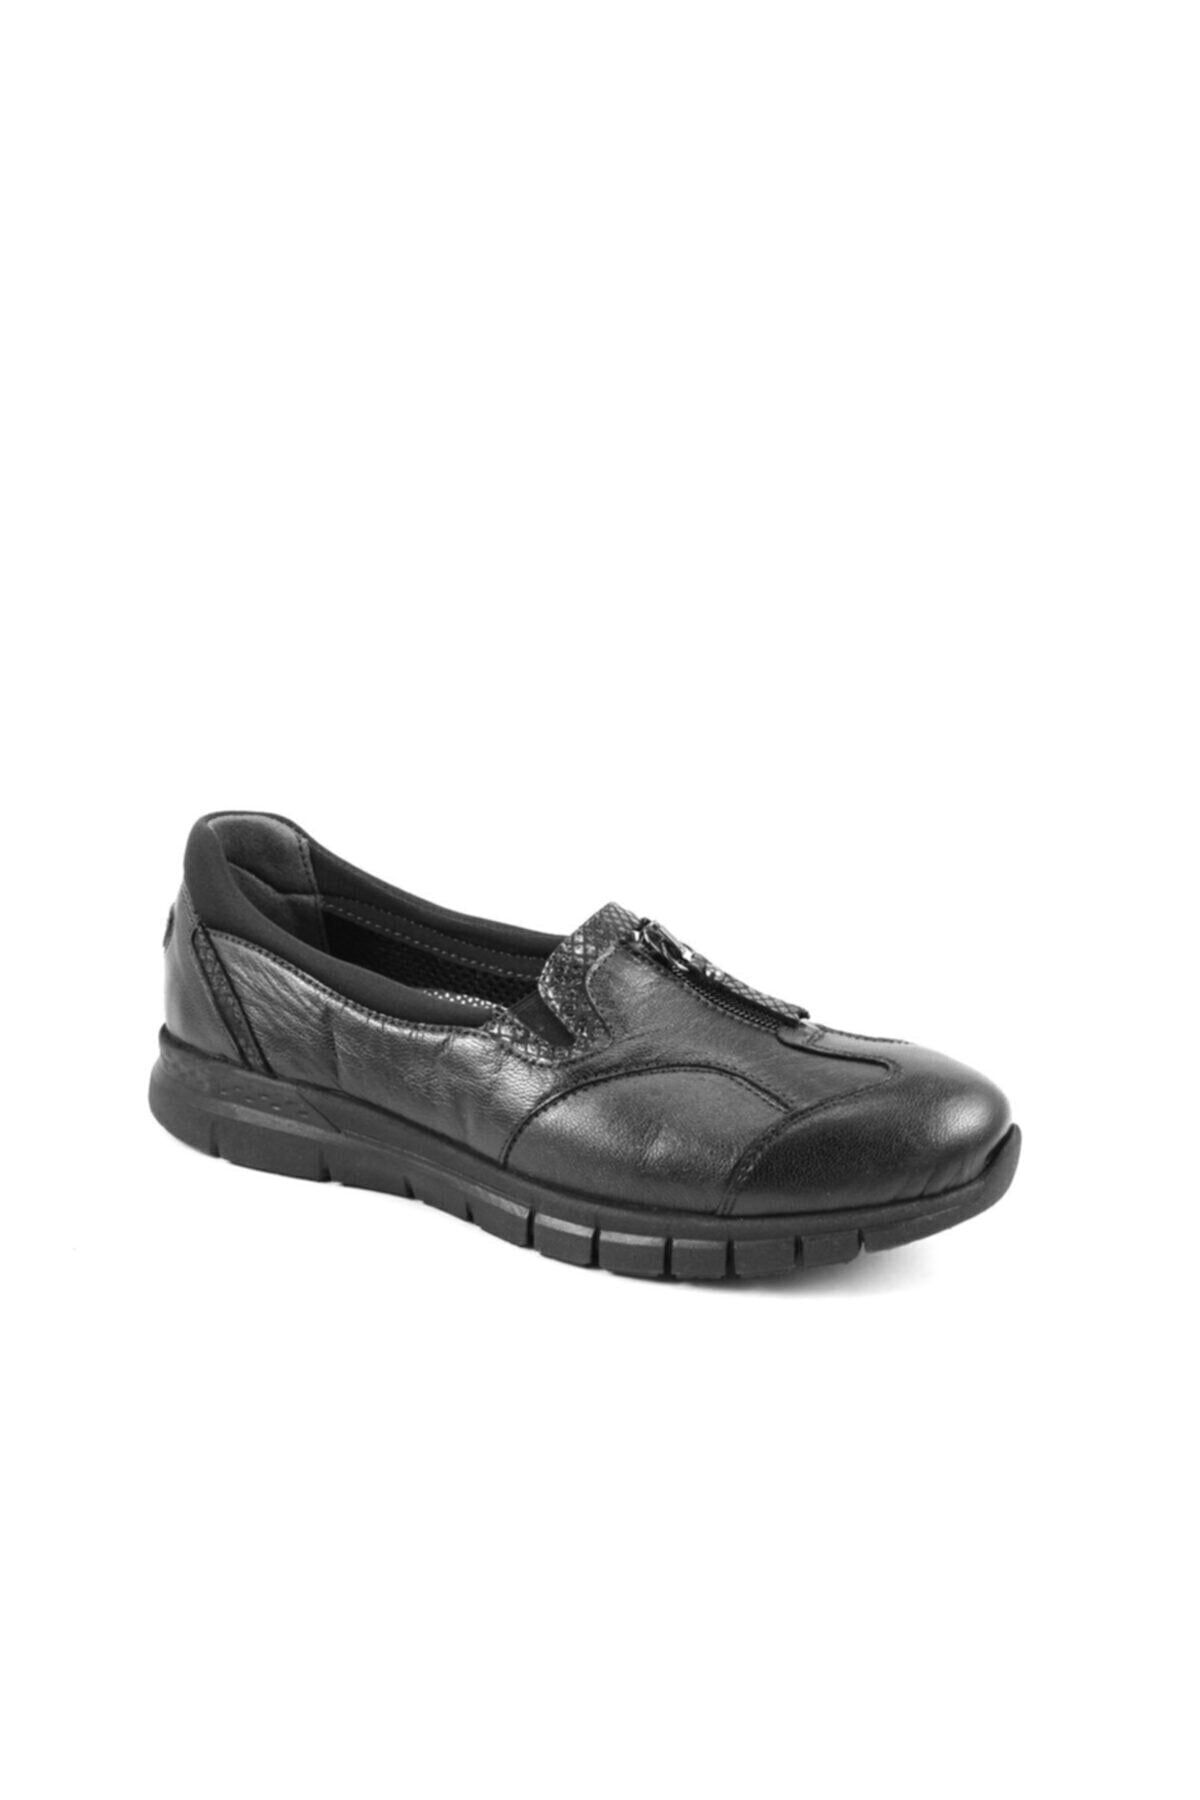 Forelli Lılyum-g Comfort Kadın Ayakkabı Siyah